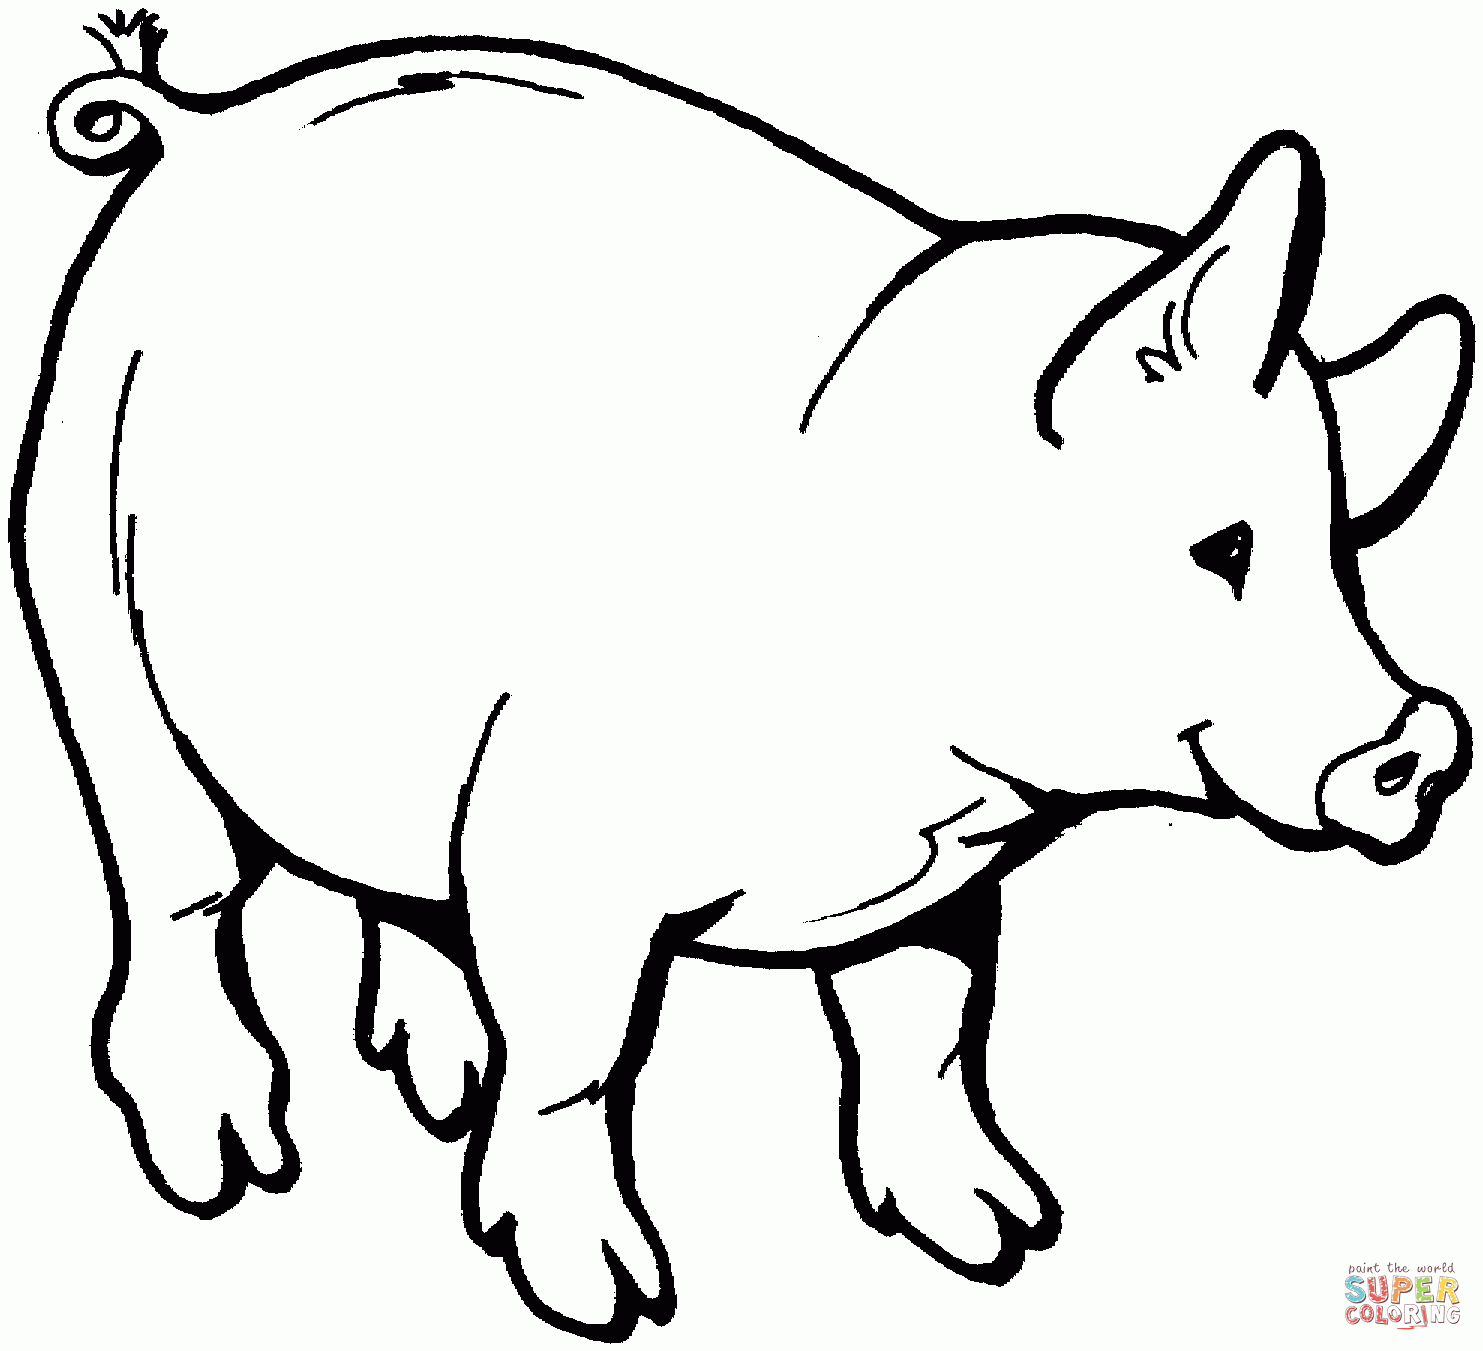 Ausmalbilder Schwein - Malvorlagen Kostenlos Zum Ausdrucken ganzes Ausmalbild Schwein